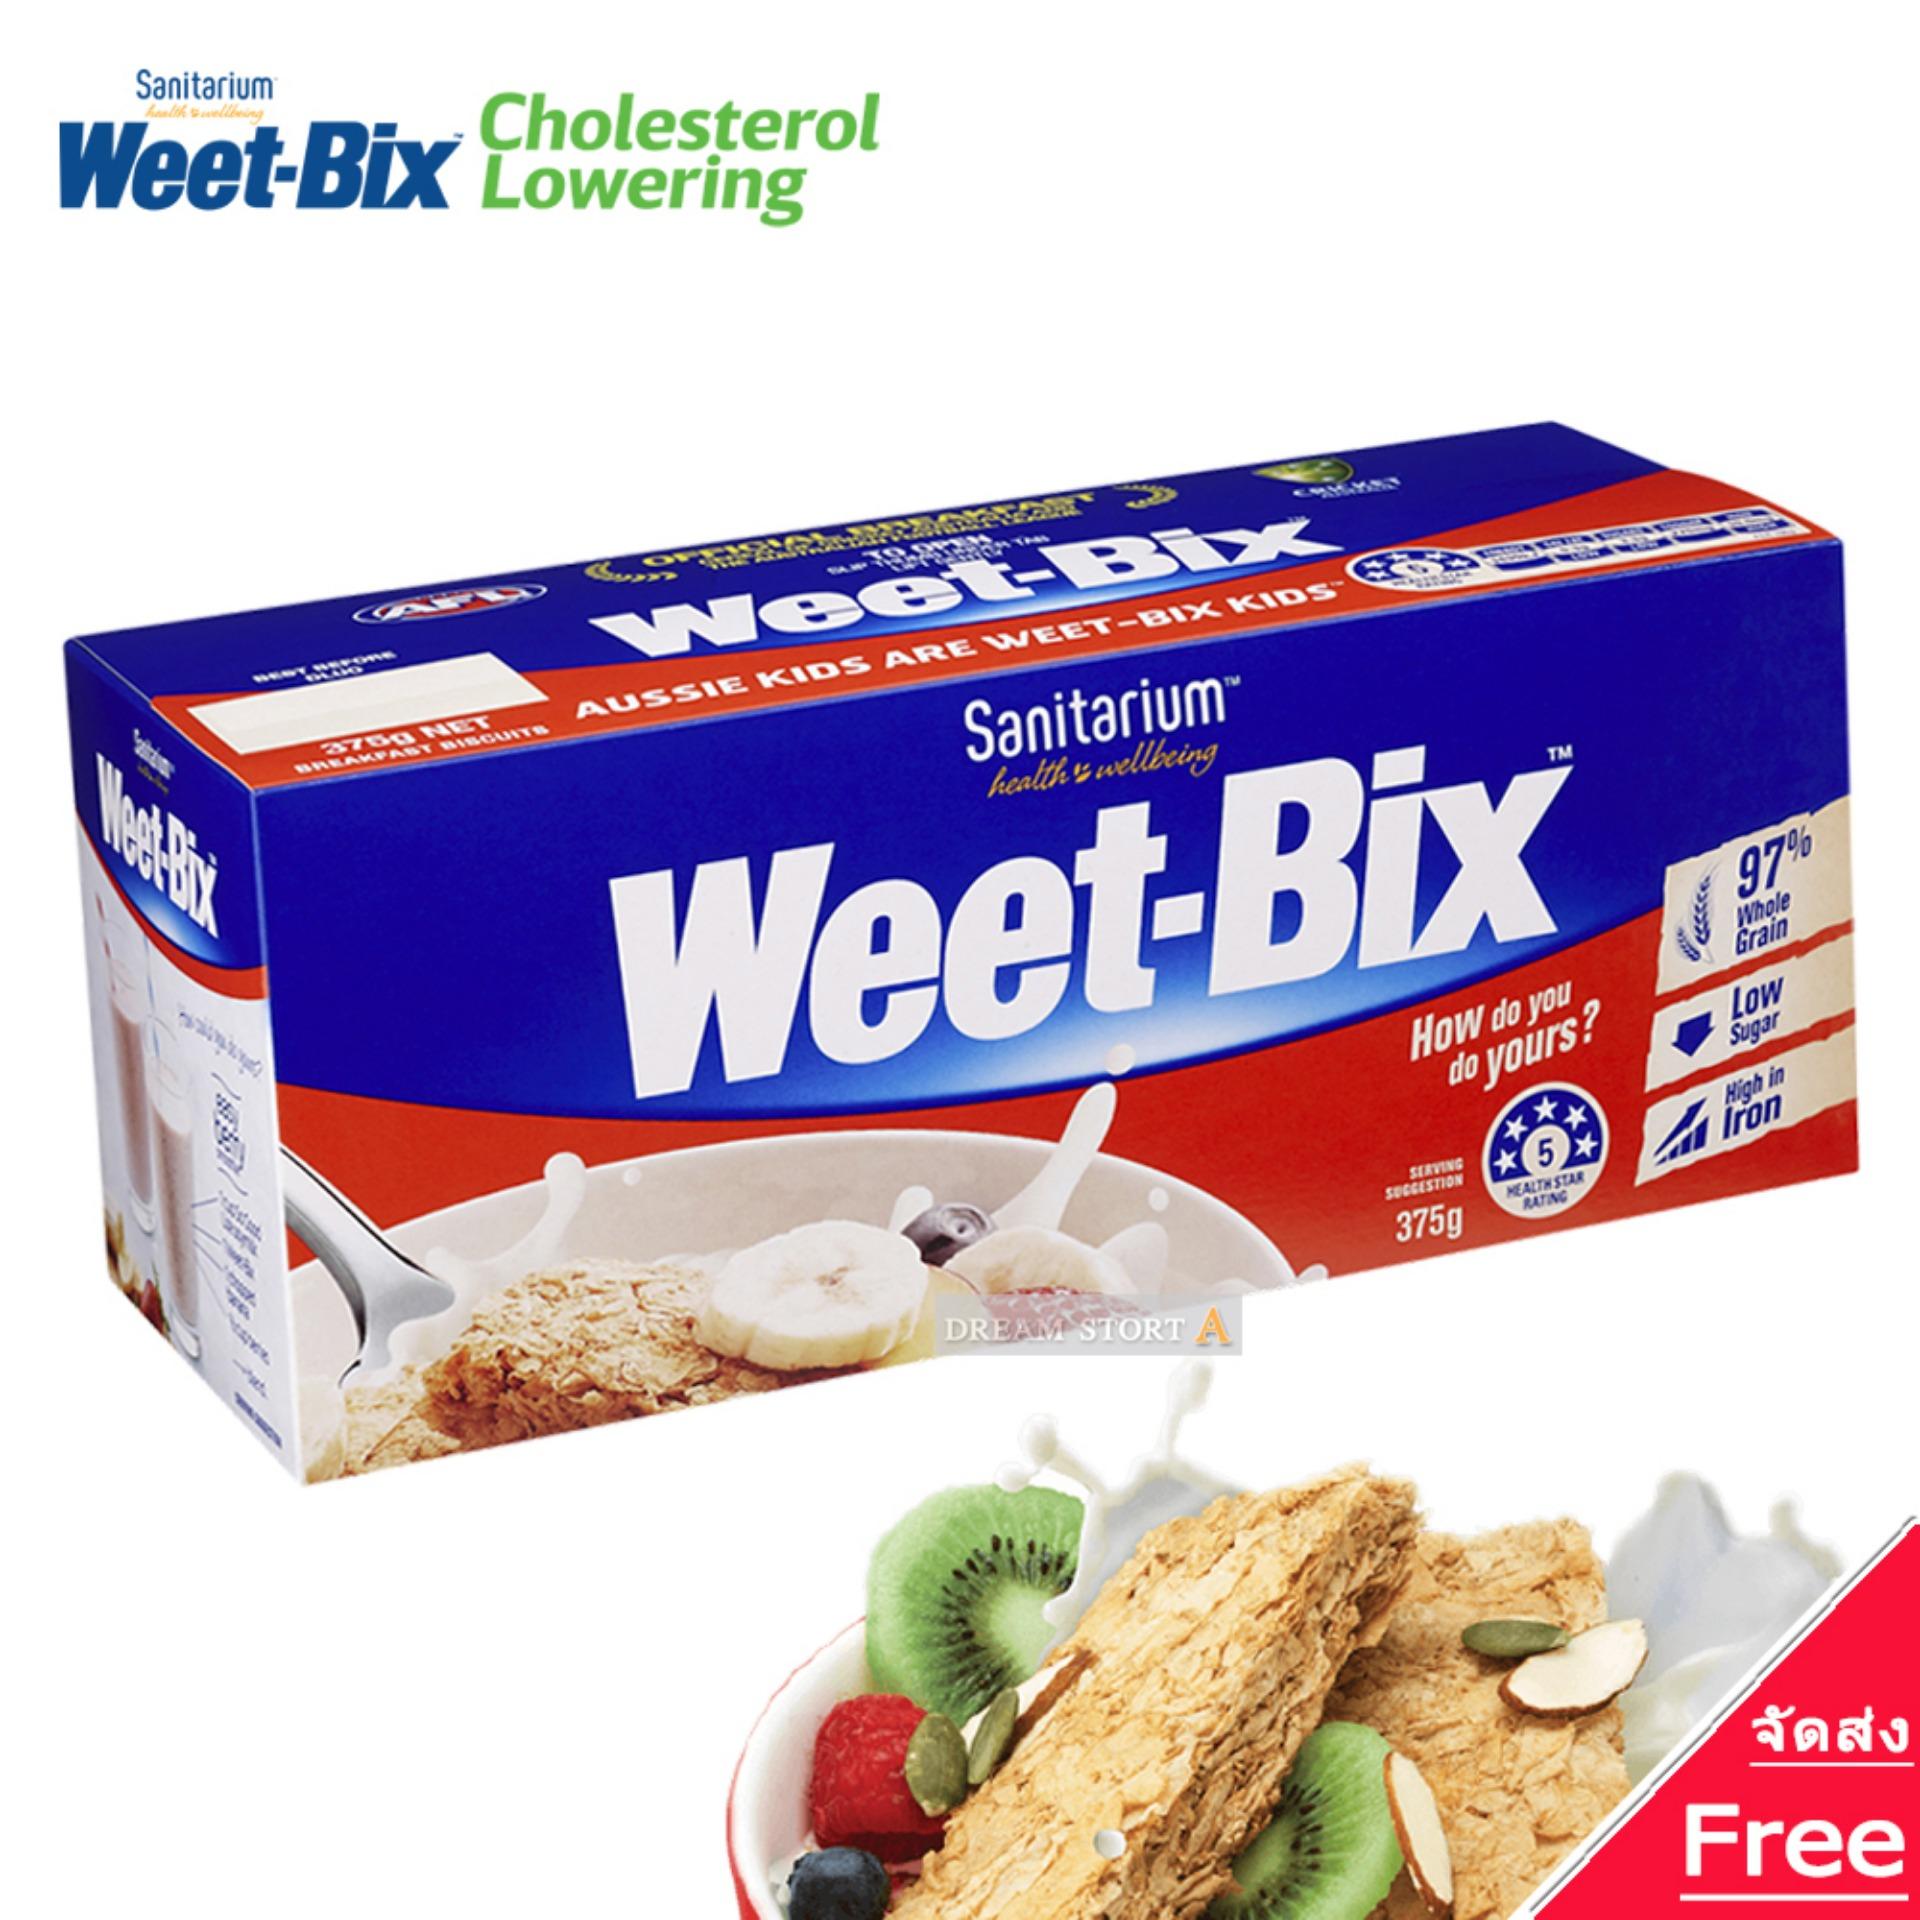 Weet-Bix ซีเรียล ธัญพืชอัดแท่ง  สำหรับอาหารเช้า หรืออาหารว่าง (ออริจินอล)